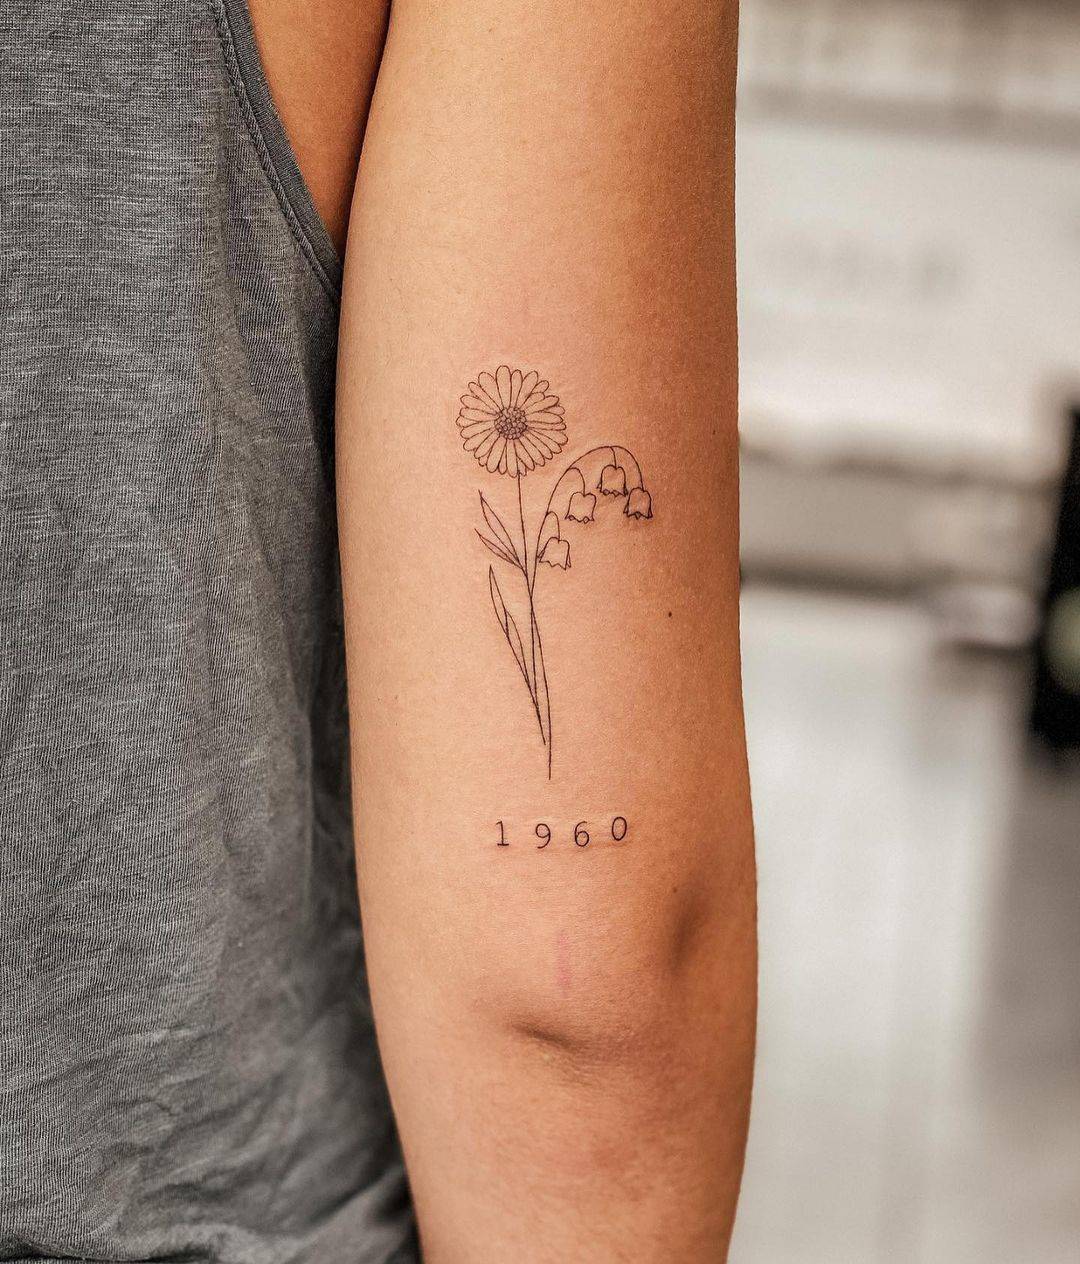 Tatuajes minimalistas para familia: diseños para representar vuestra unión